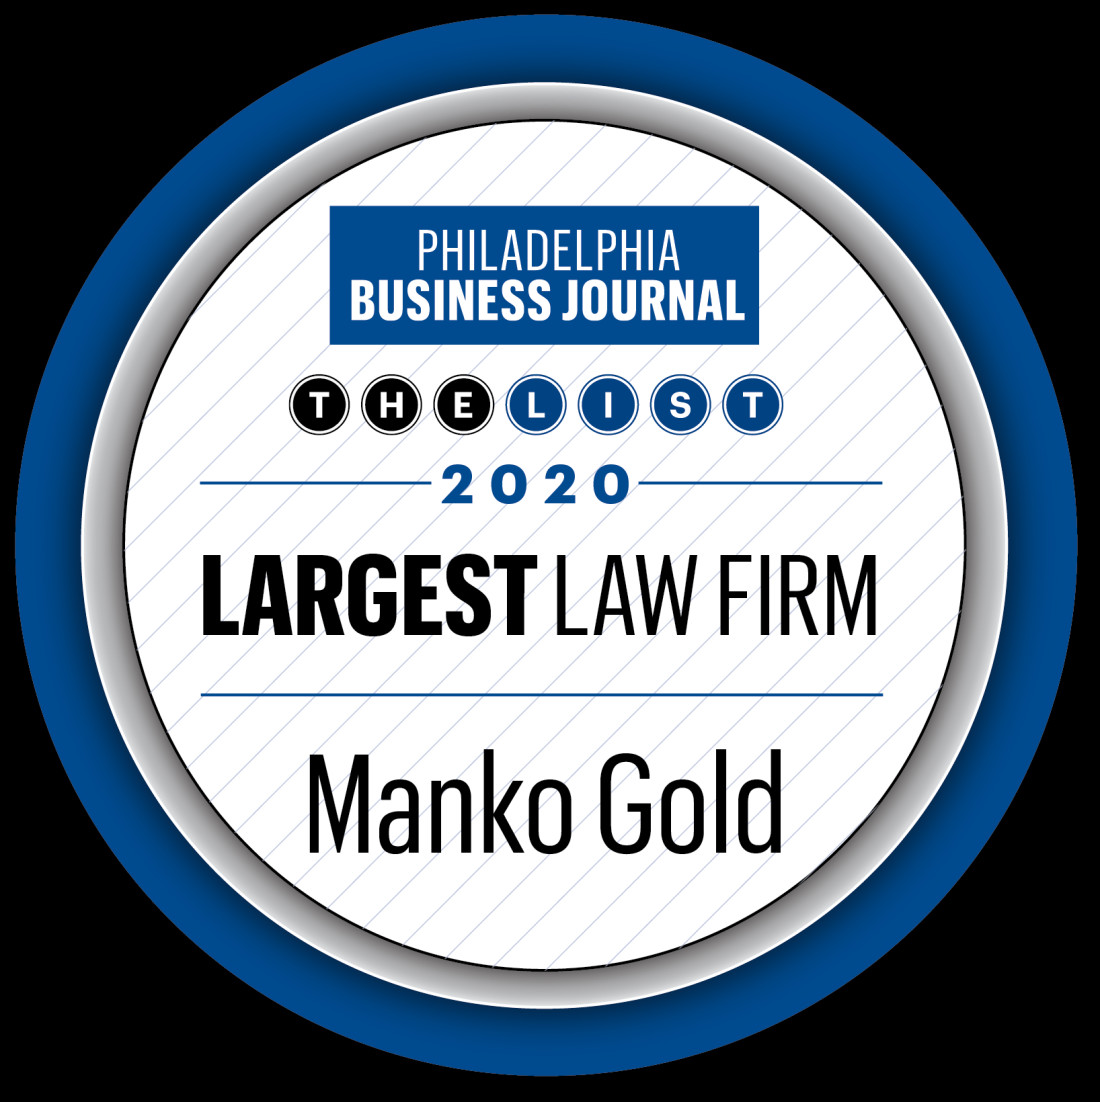 PBJ Largest Law Firm logo